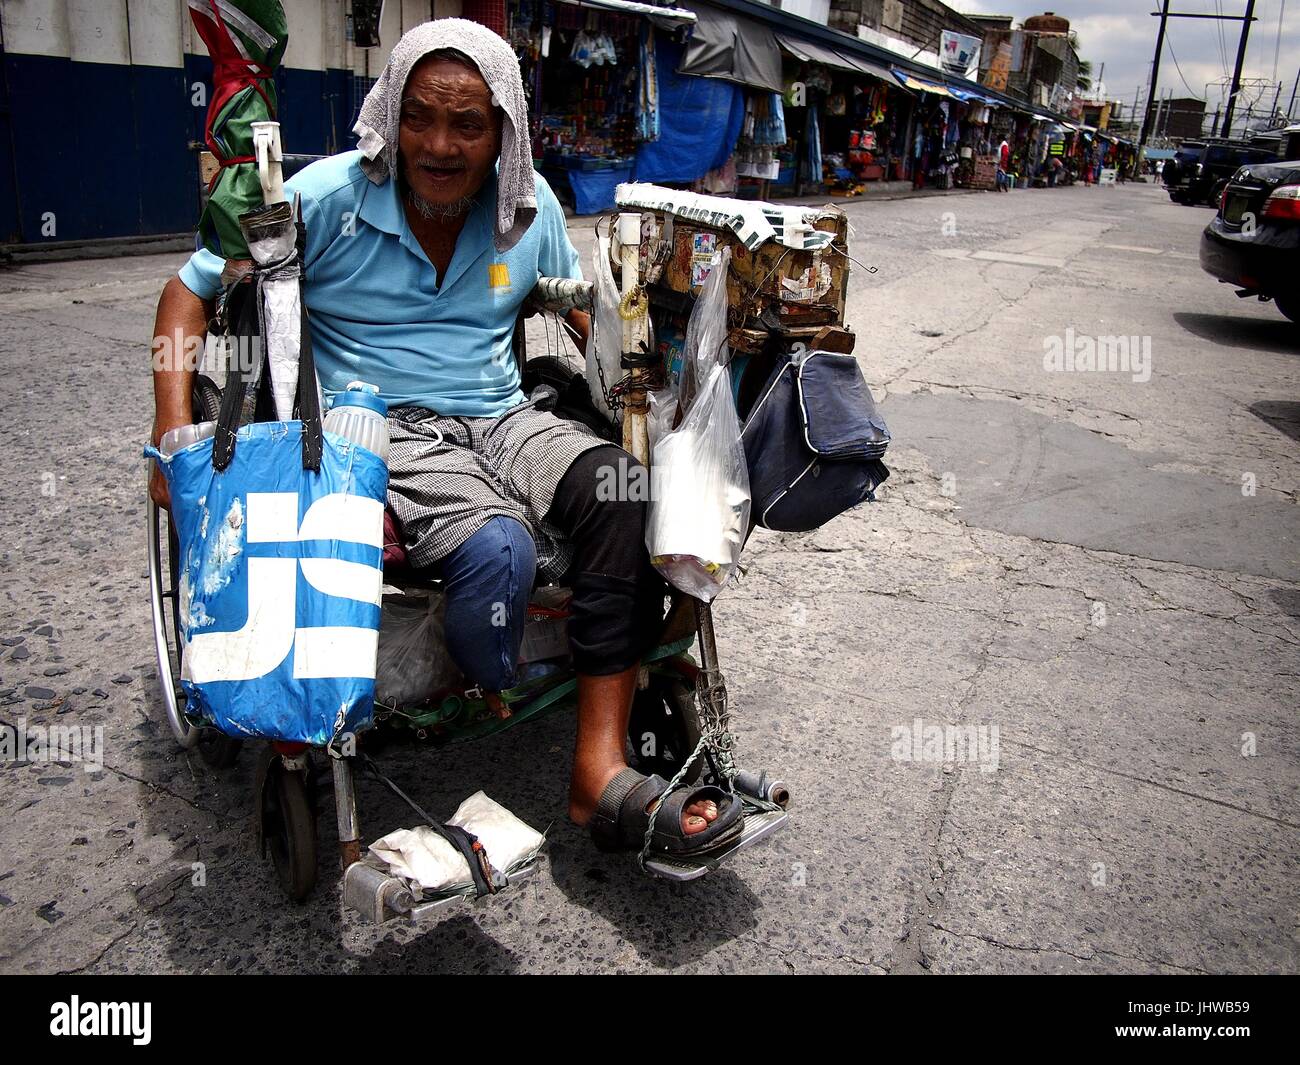 CAINTA CITY, Philippinen - 12. Juli 2017: Ein Alter behinderter Mann rollt in seinem Rollstuhl auf einem öffentlichen Markt. Stockfoto